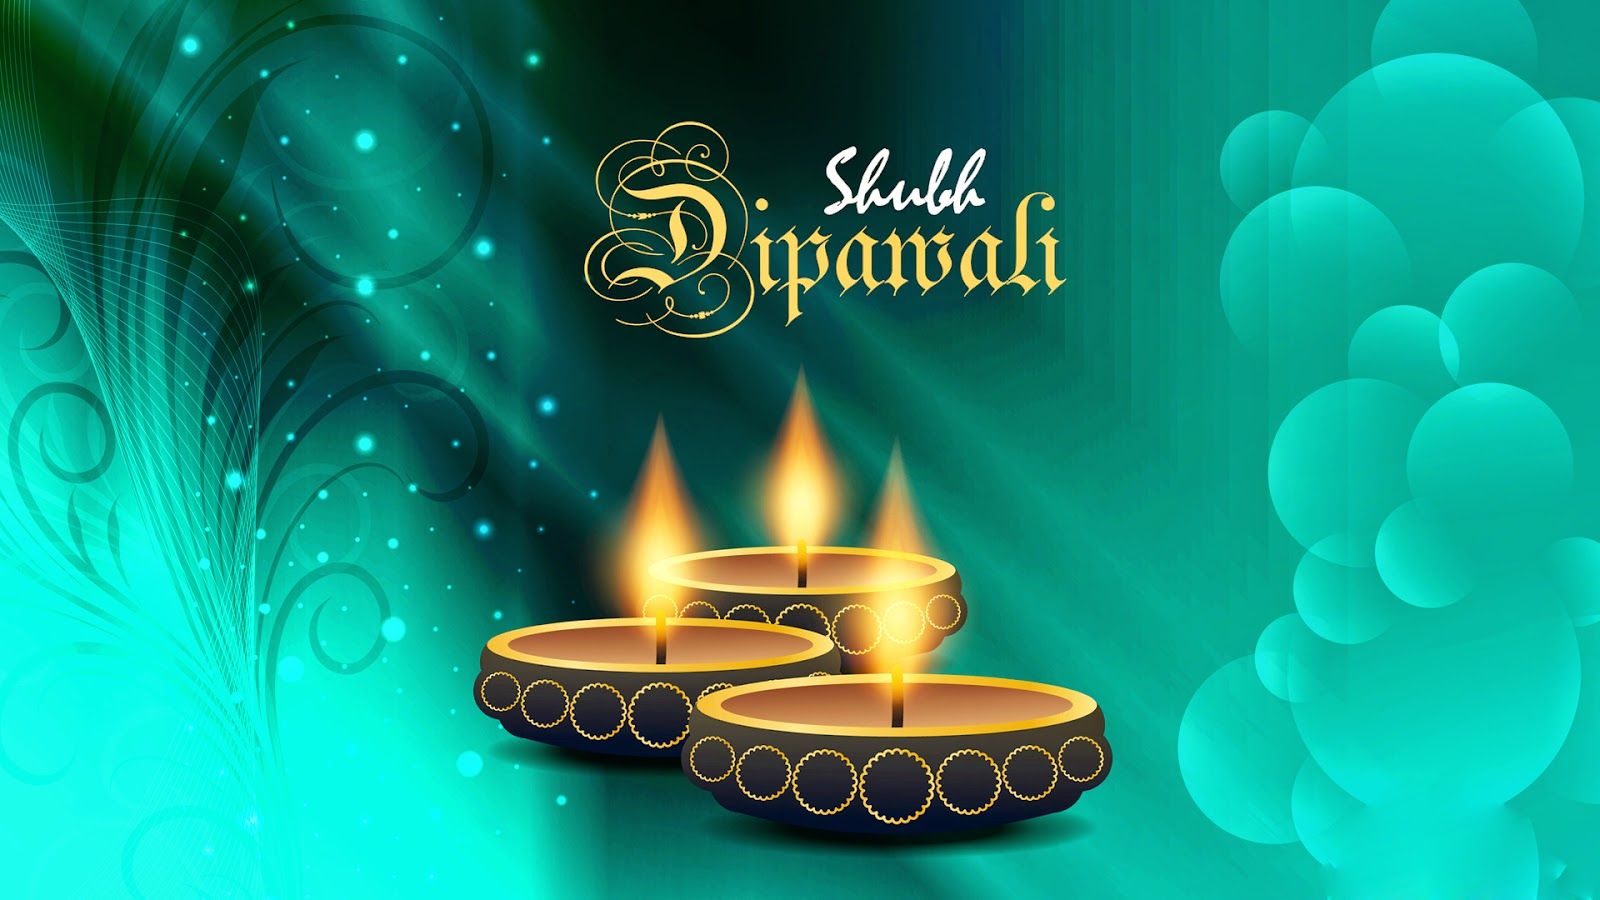 Full Hd Happy Diwali - HD Wallpaper 